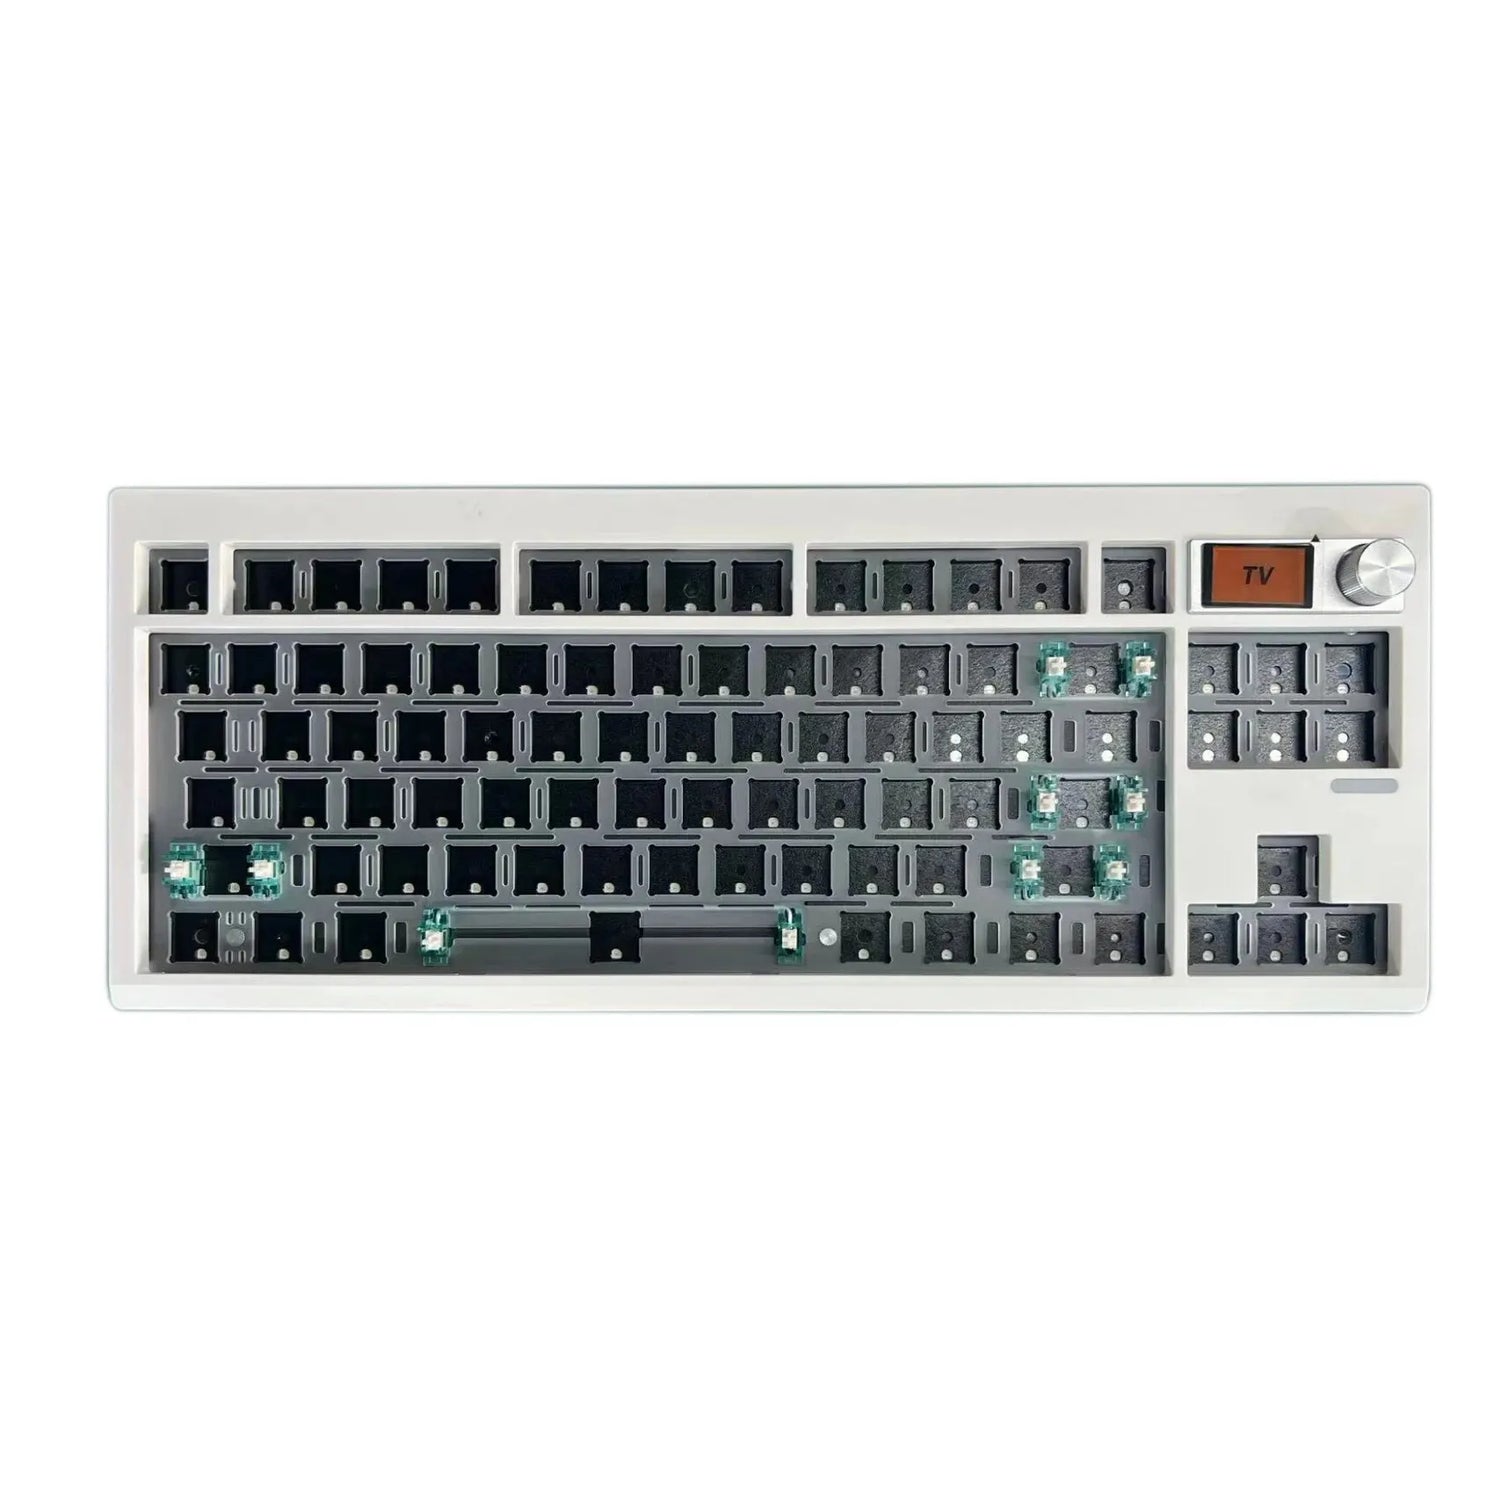 GMK87 Mechanical Keyboard Mechanical Keyboard Custom Keyboards UK White  